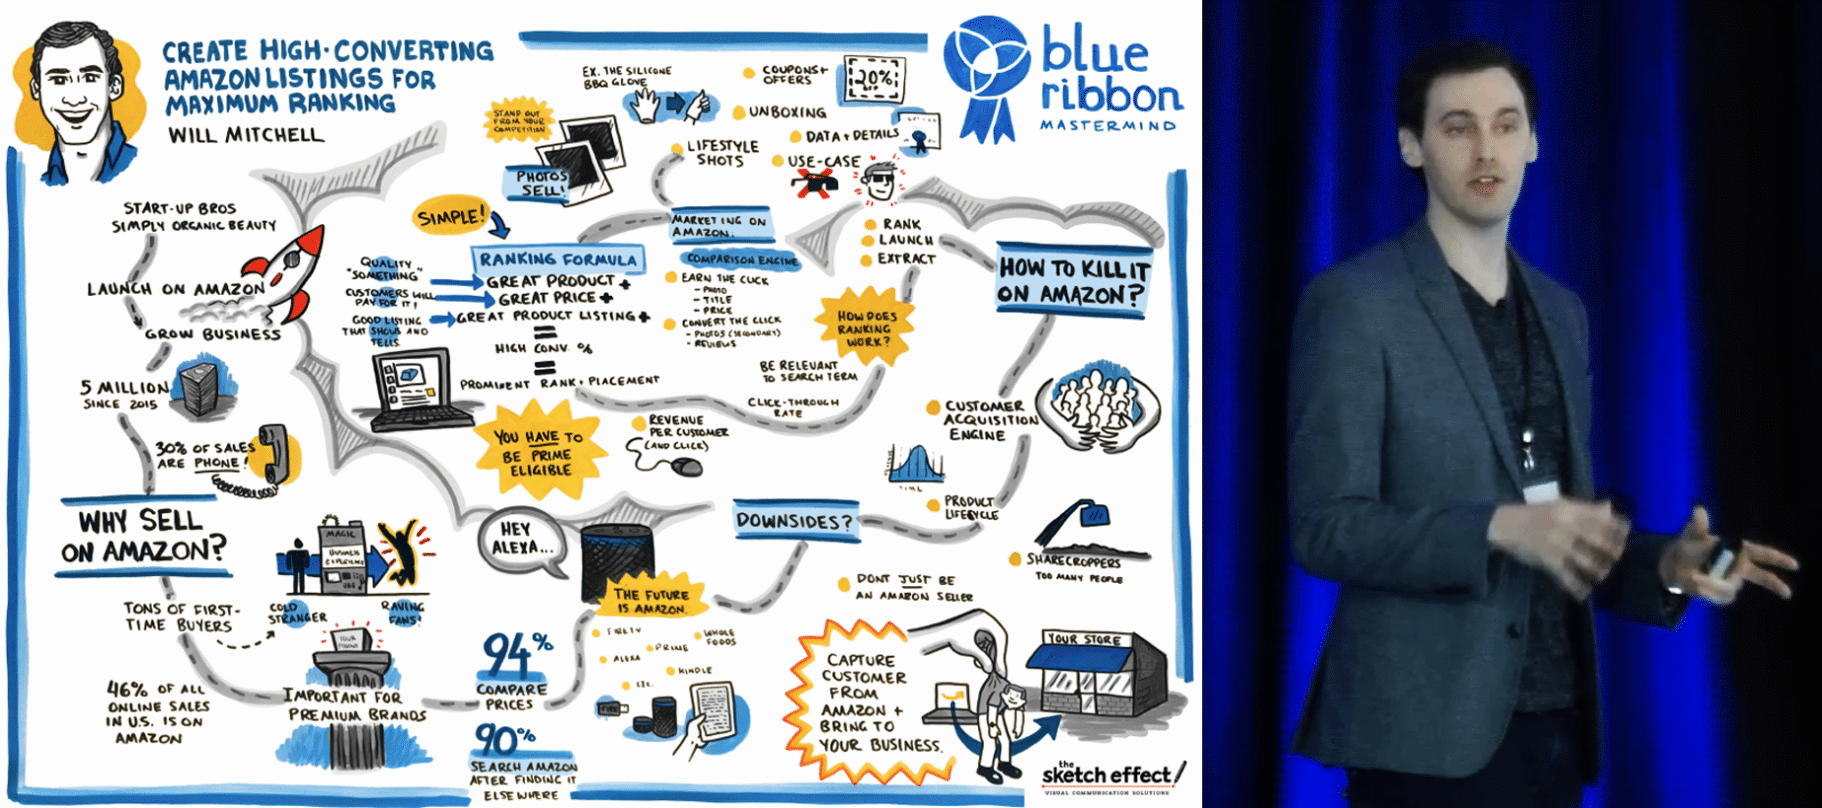 will mitchell startupbros blue ribbon mastermind ezra firestone smart marketer